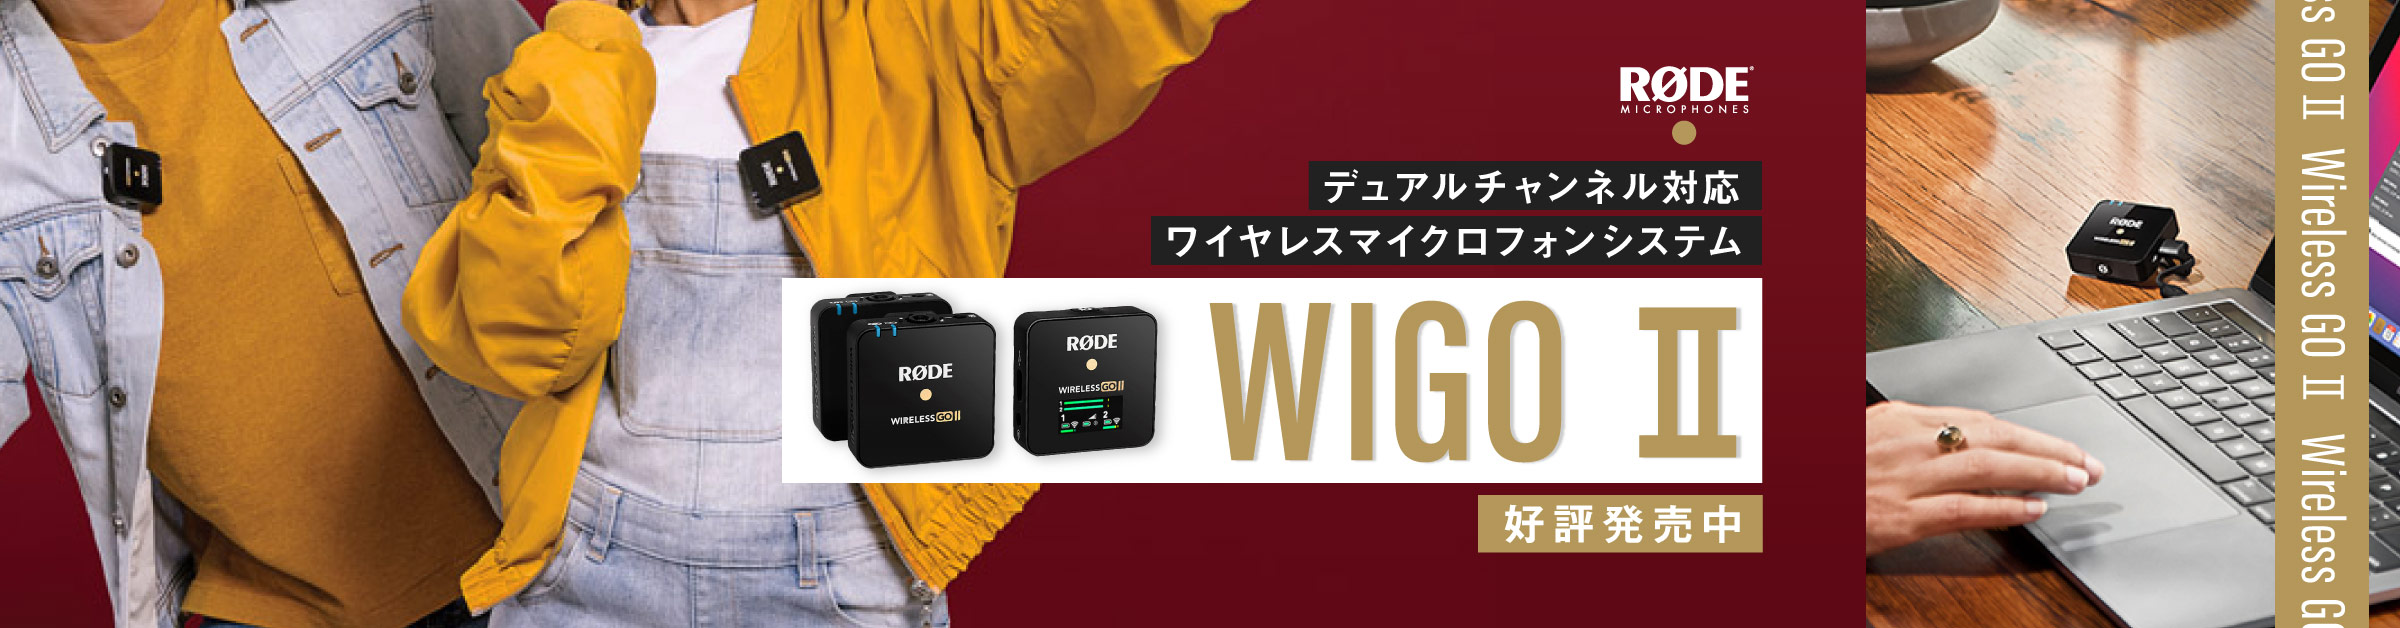 新製品】RODEからワイヤレスマイクシステム「Wireless GO Ⅱ」登場 